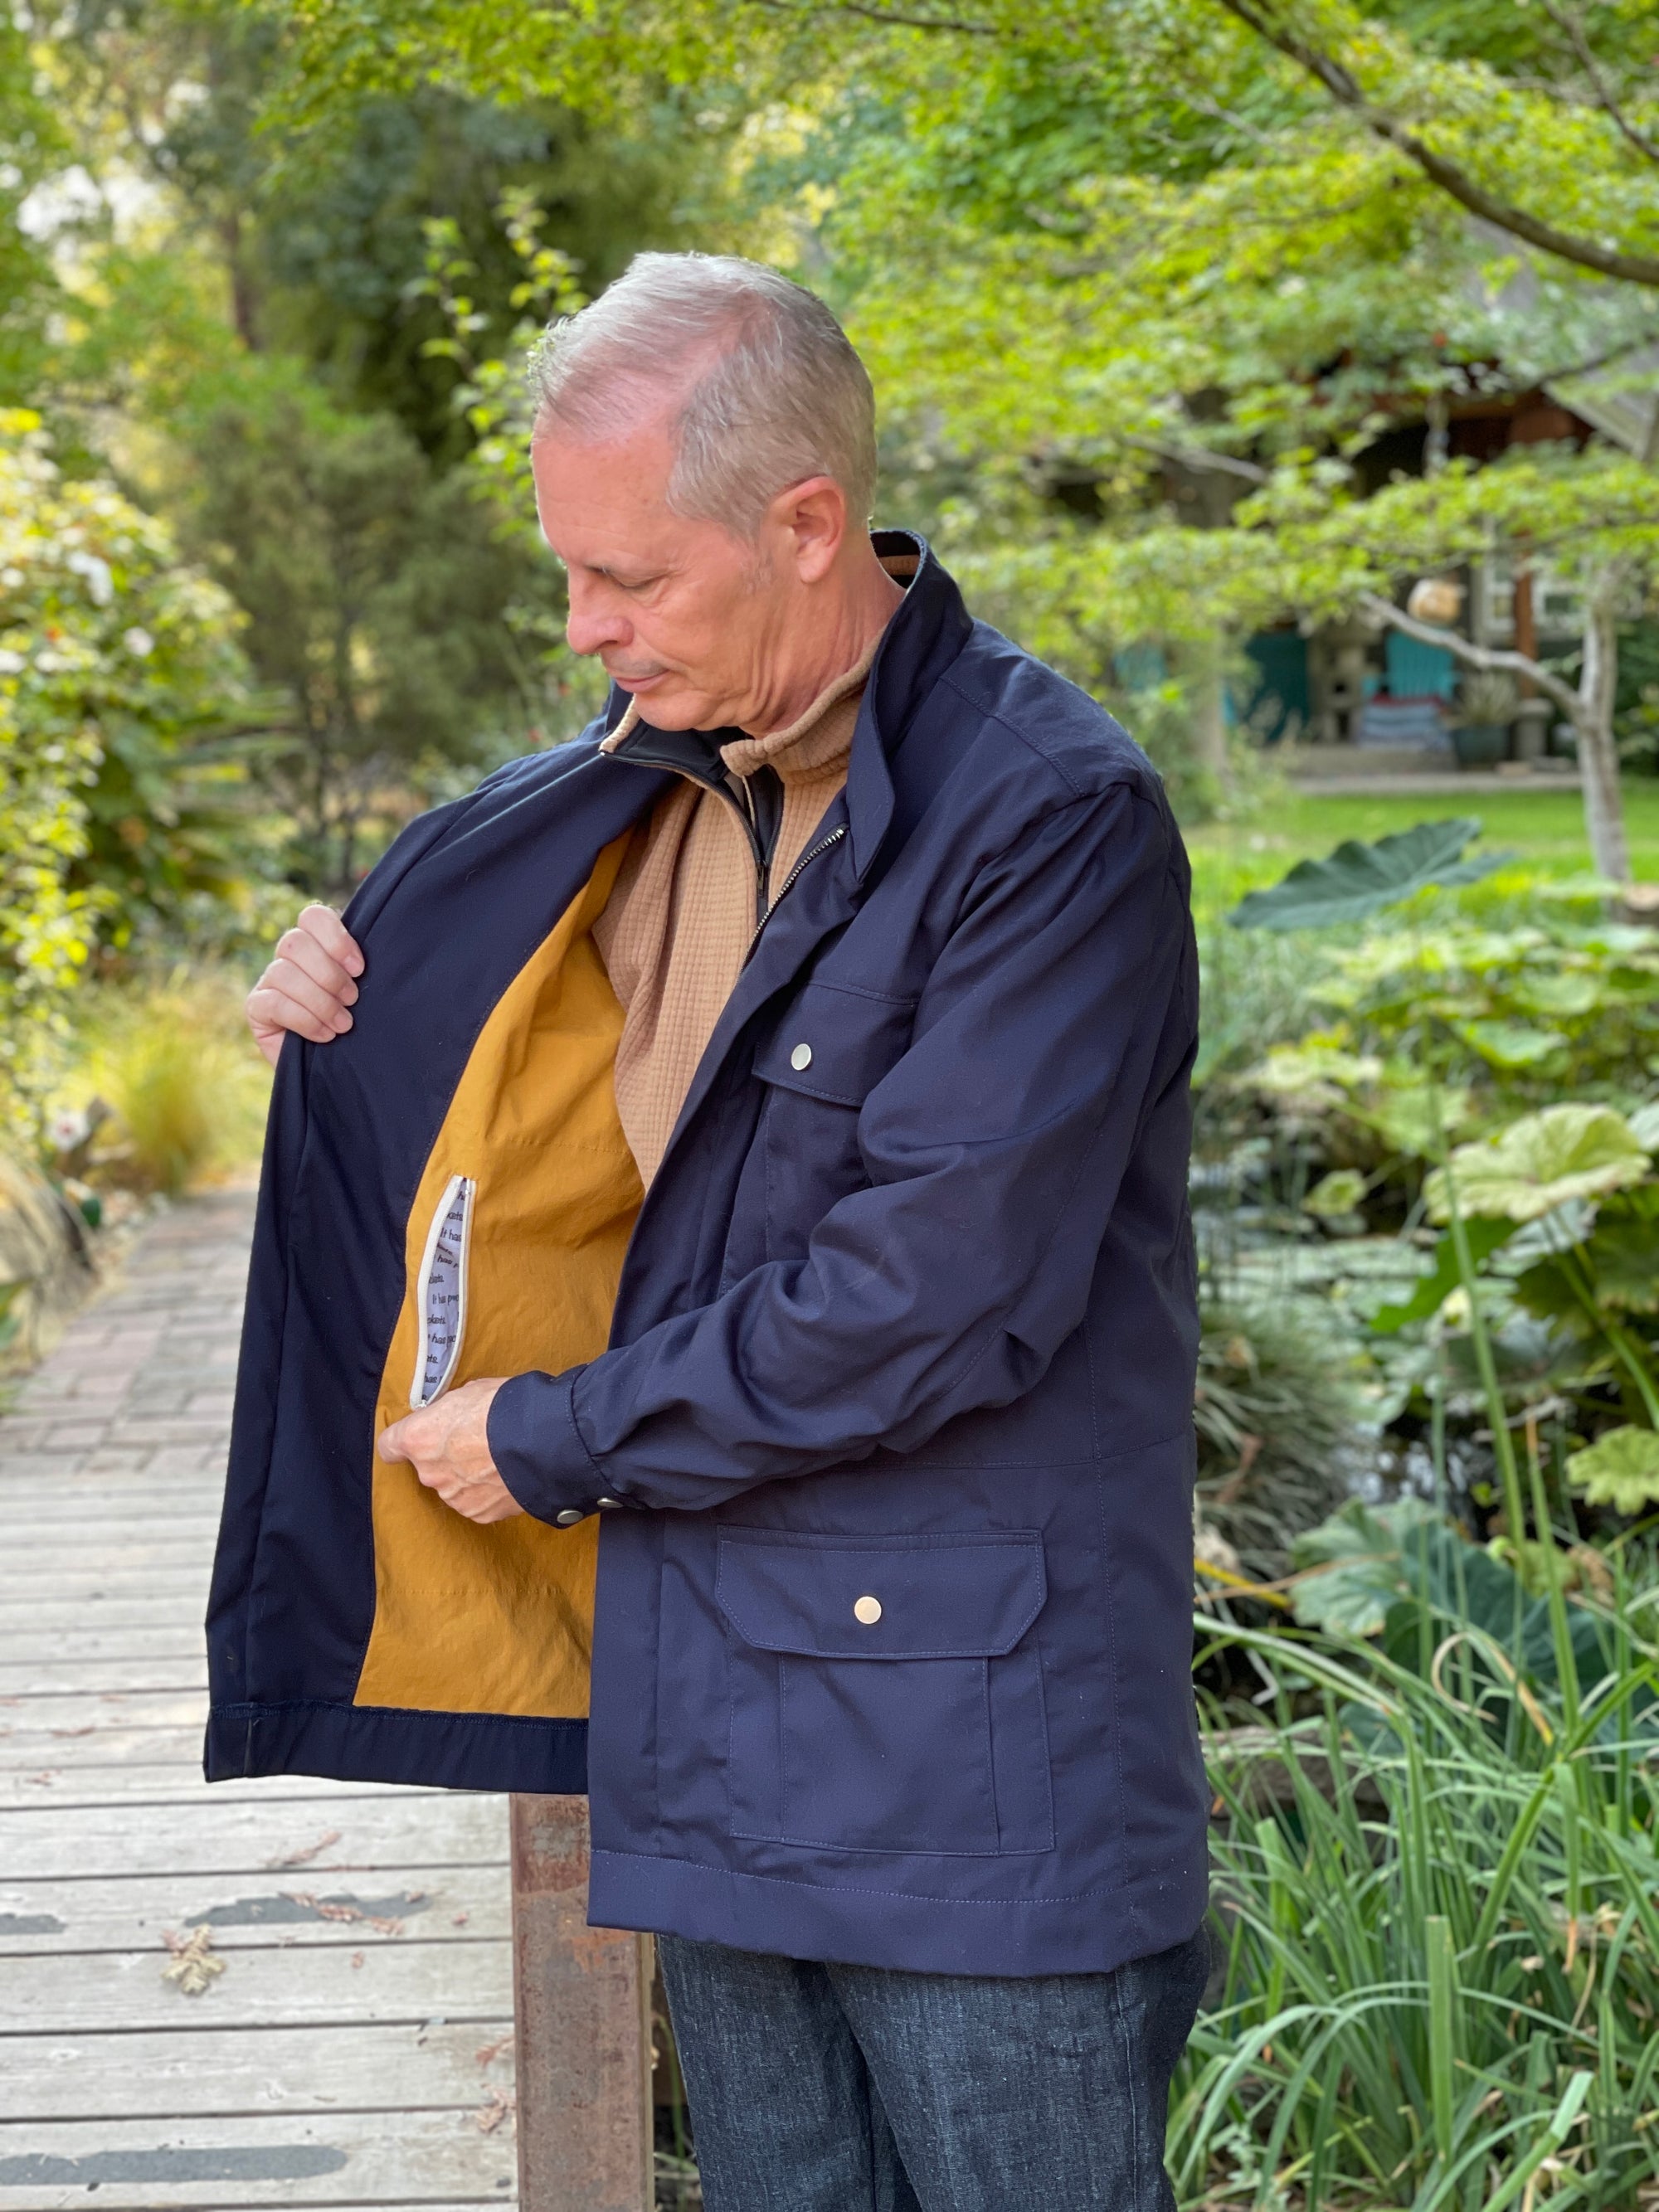 Digital Tosti Utility Jacket For Men Sewing Pattern, Shop